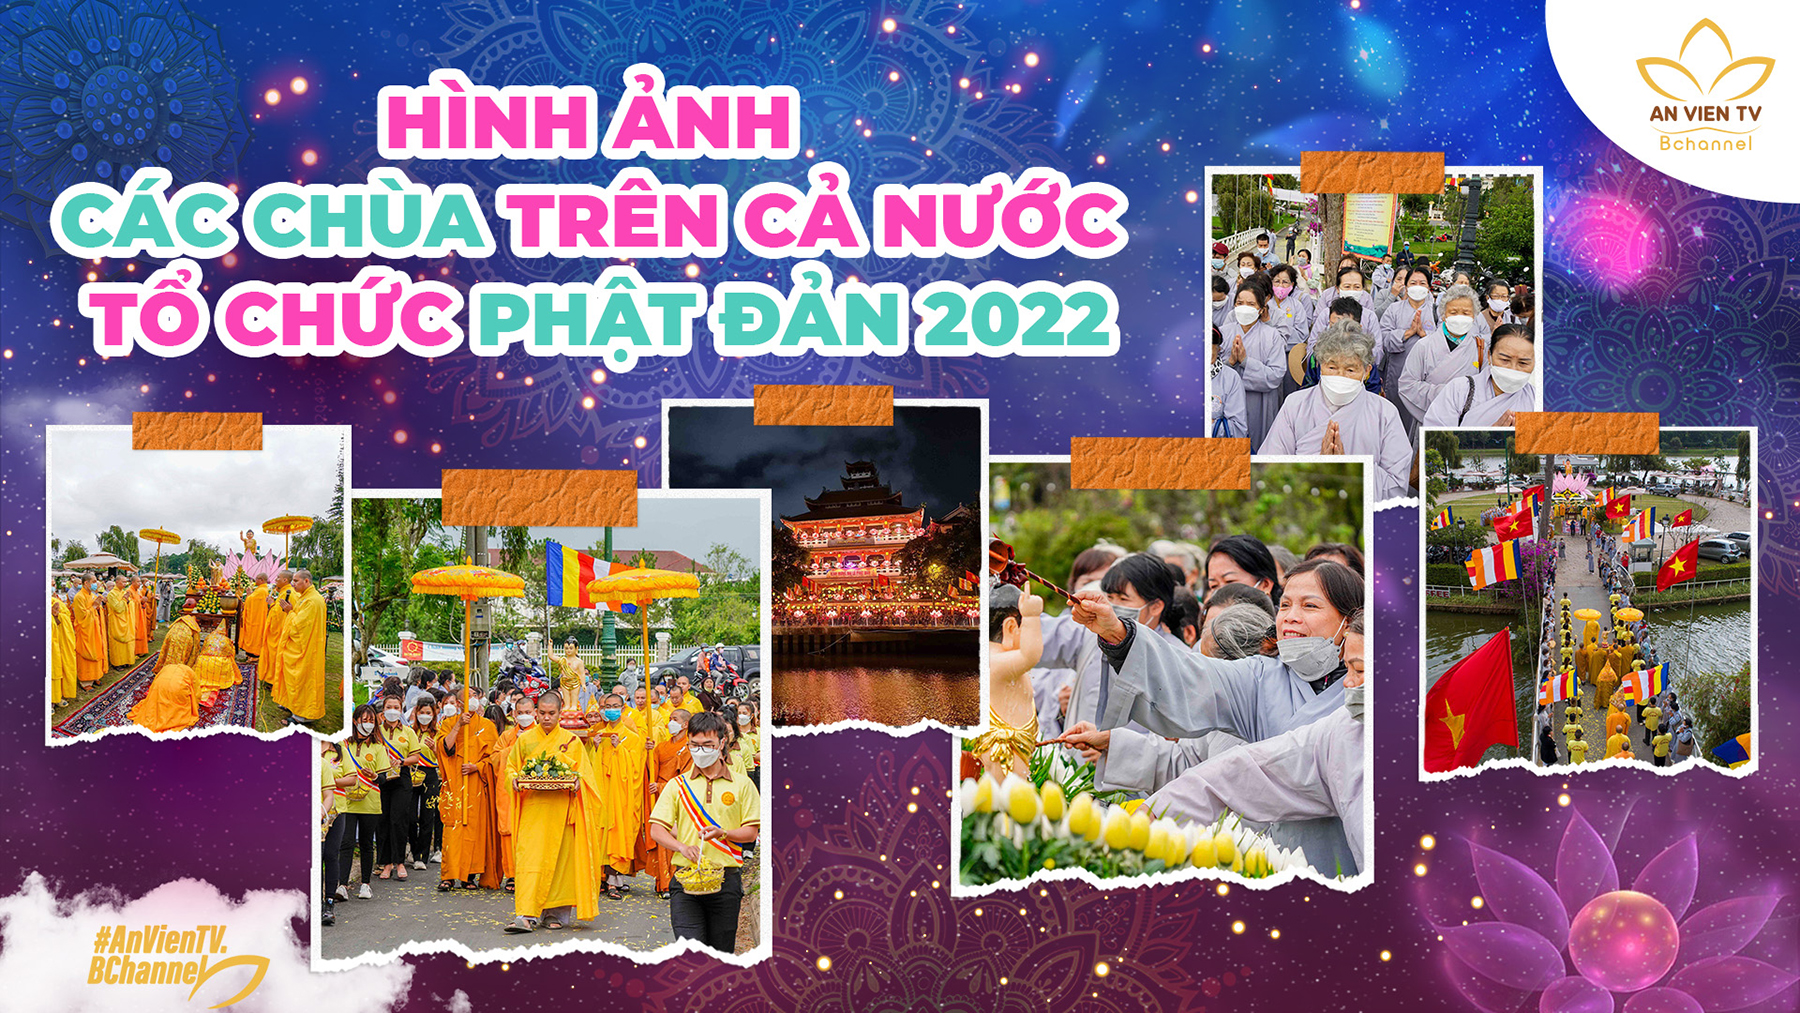 Những hình ảnh đẹp nhất chào mừng Đại lễ Phật đản 2022 - PL.2566 tại các chùa trên khắp cả nước.